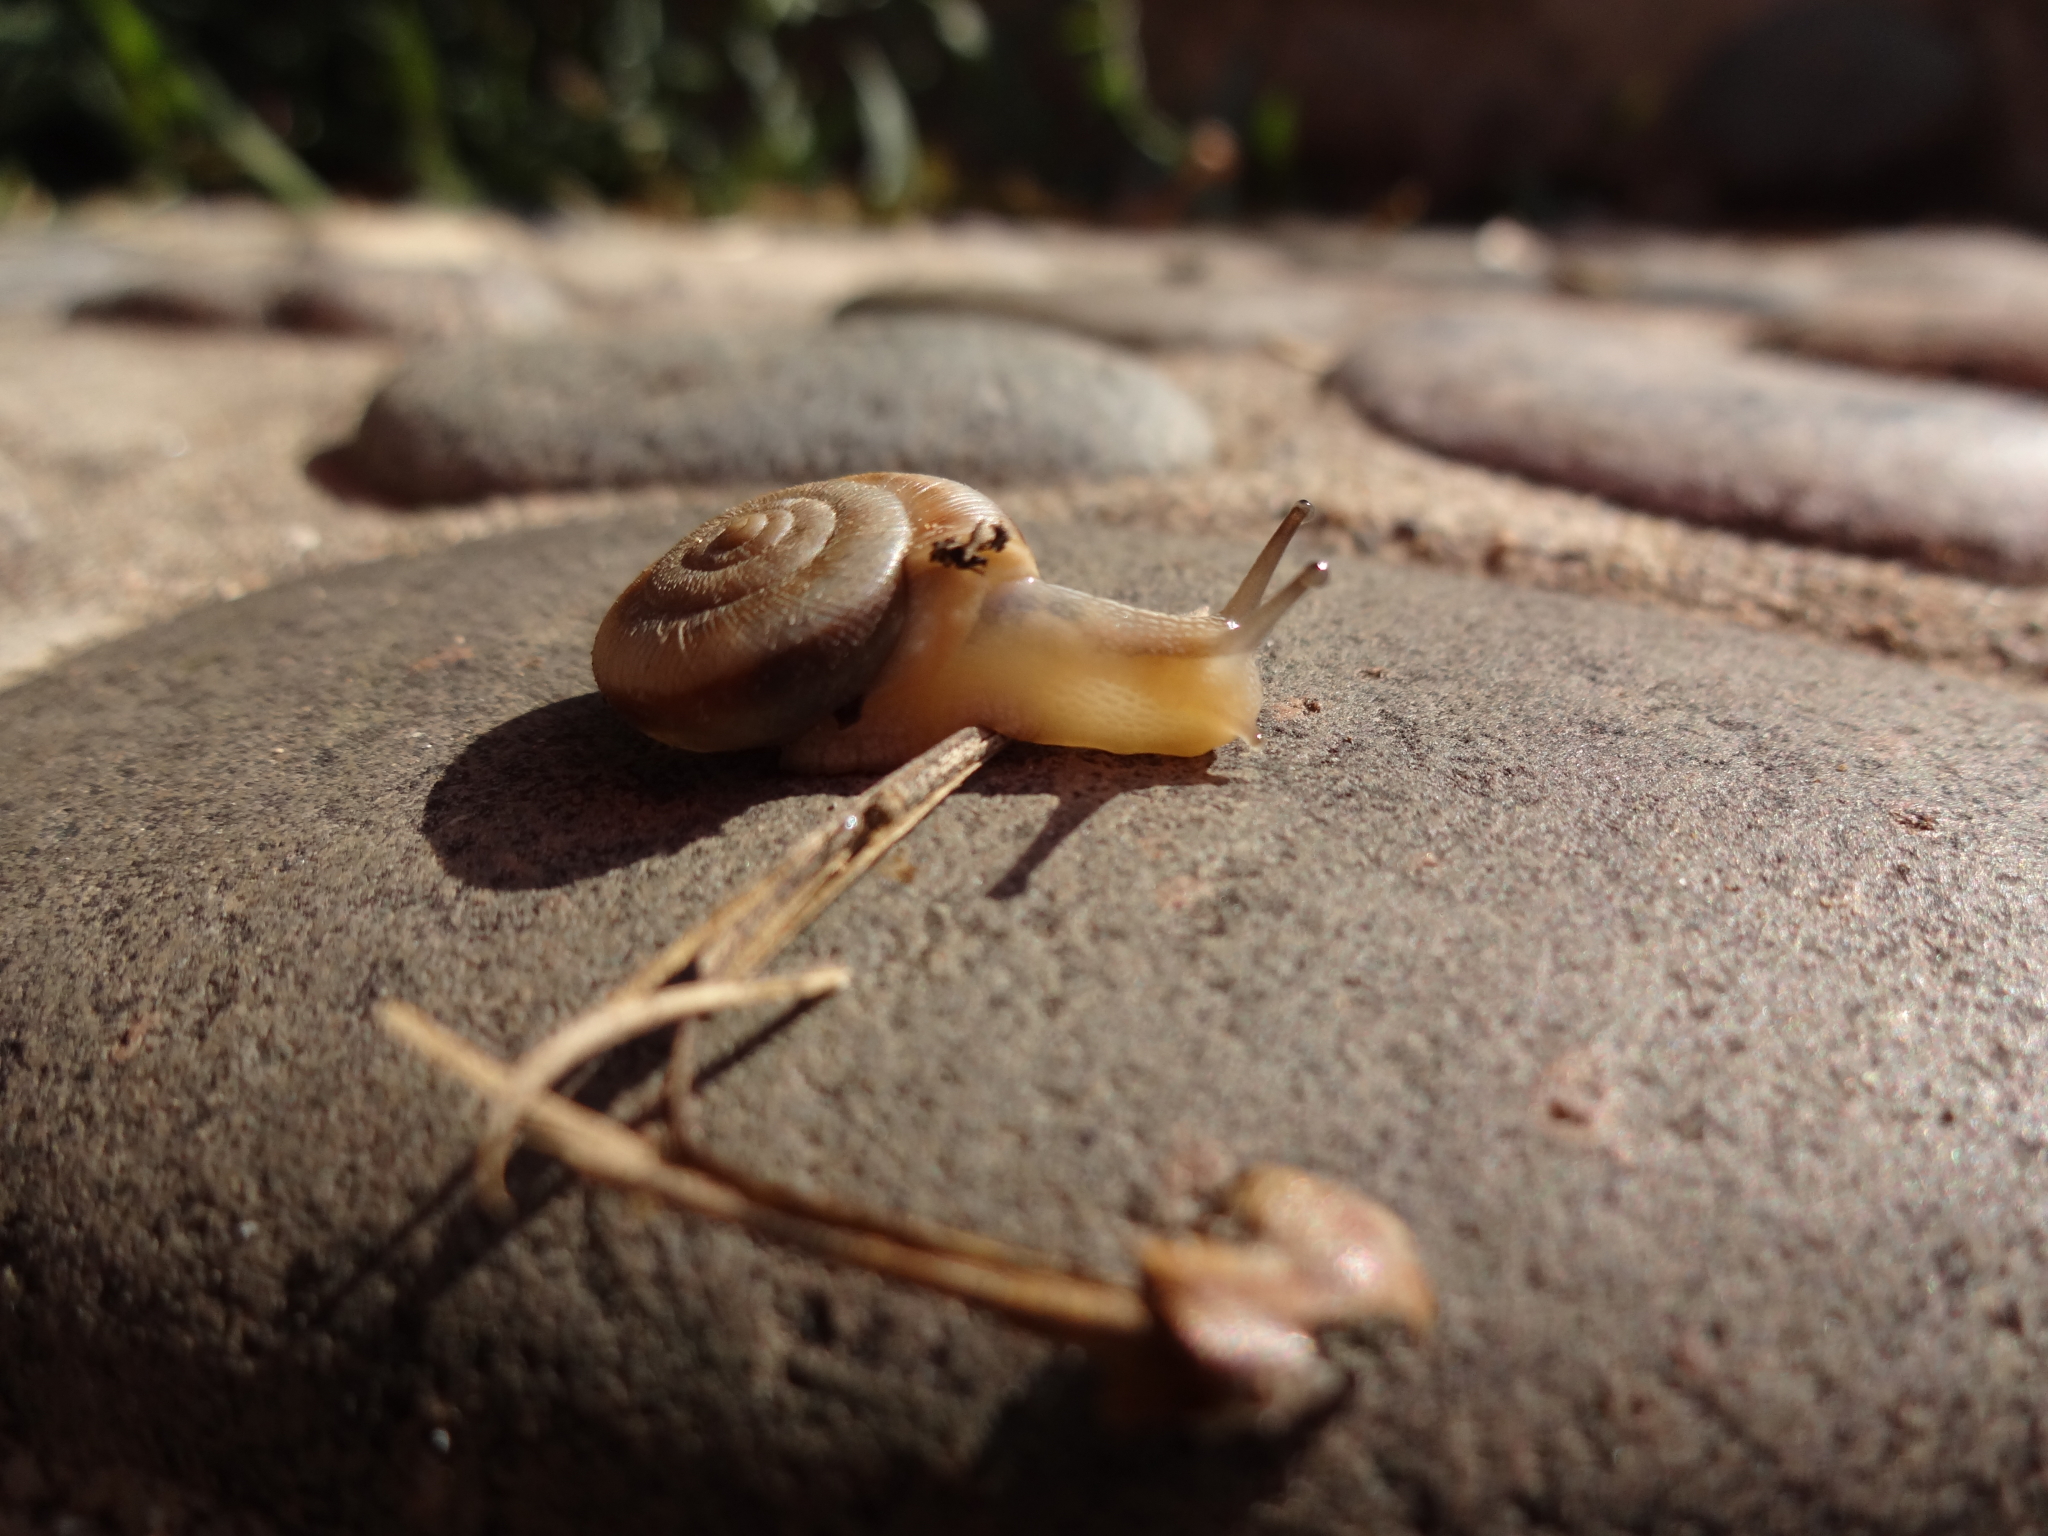 去小河边,偶遇这只出来散步的蜗牛